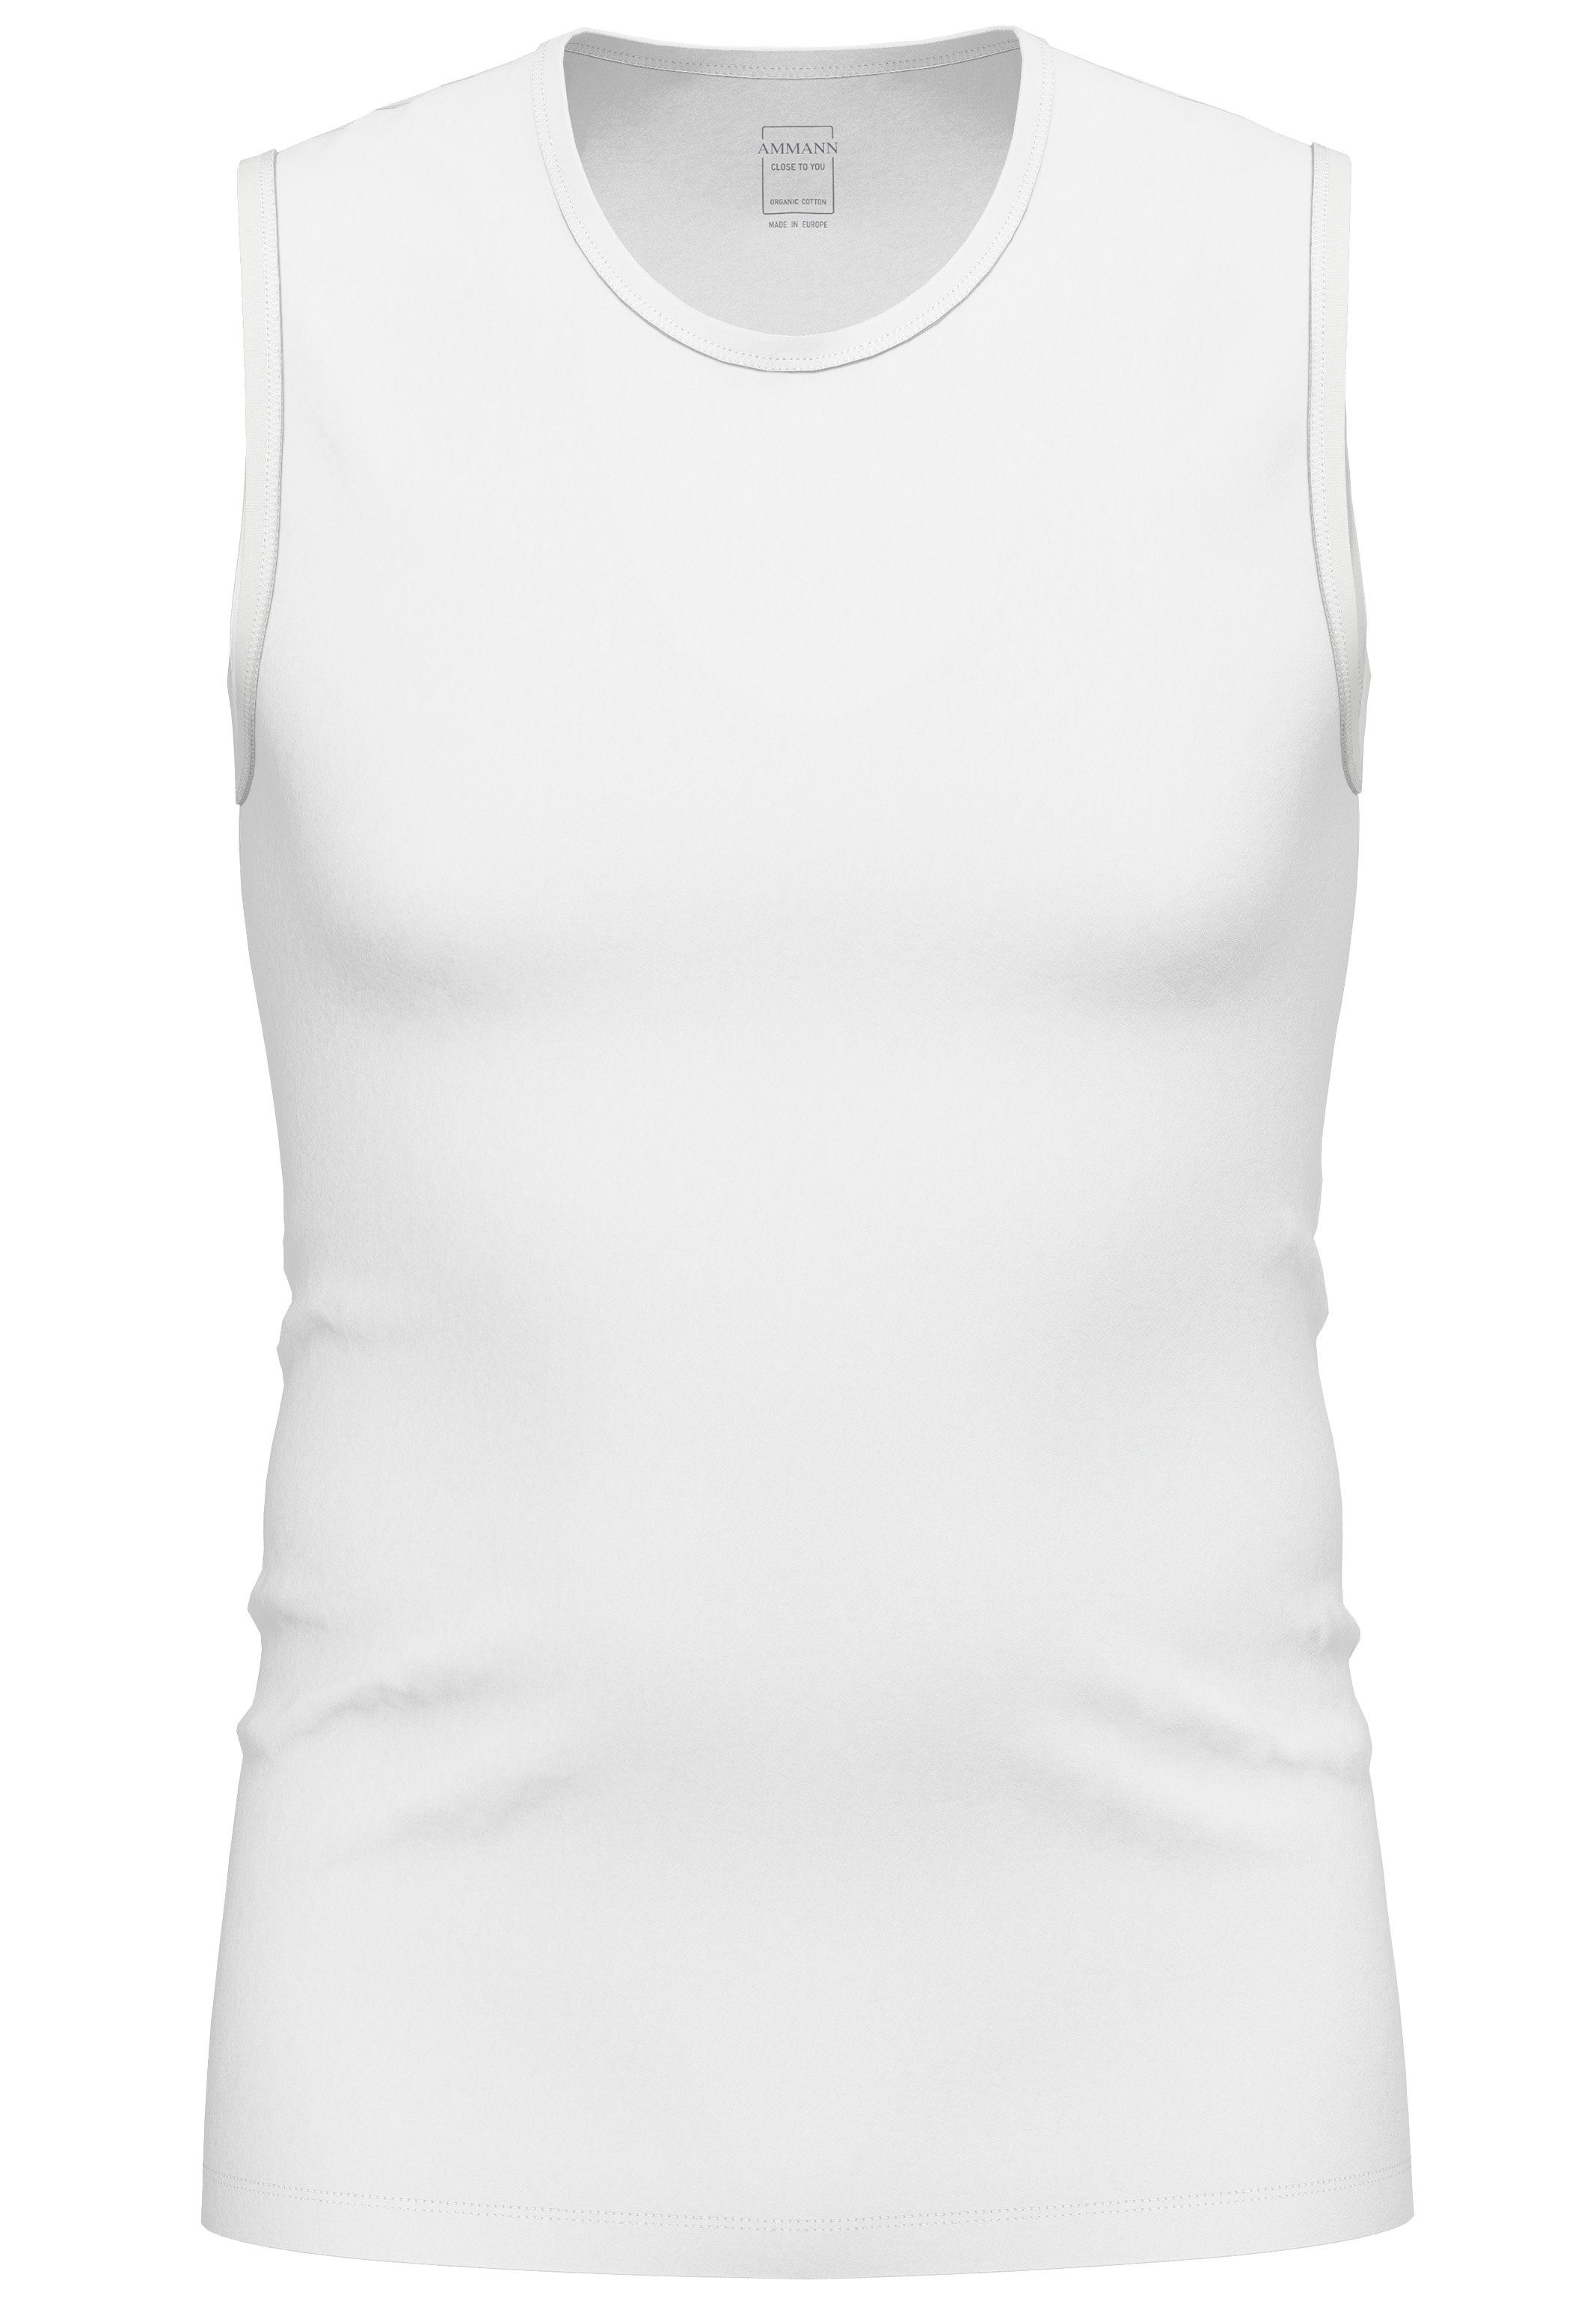 - you Unterhemd (1-St) - Tanktop Atmungsaktiv / Unterhemd Material Ammann Close - Baumwolle Weiß Elastisches to